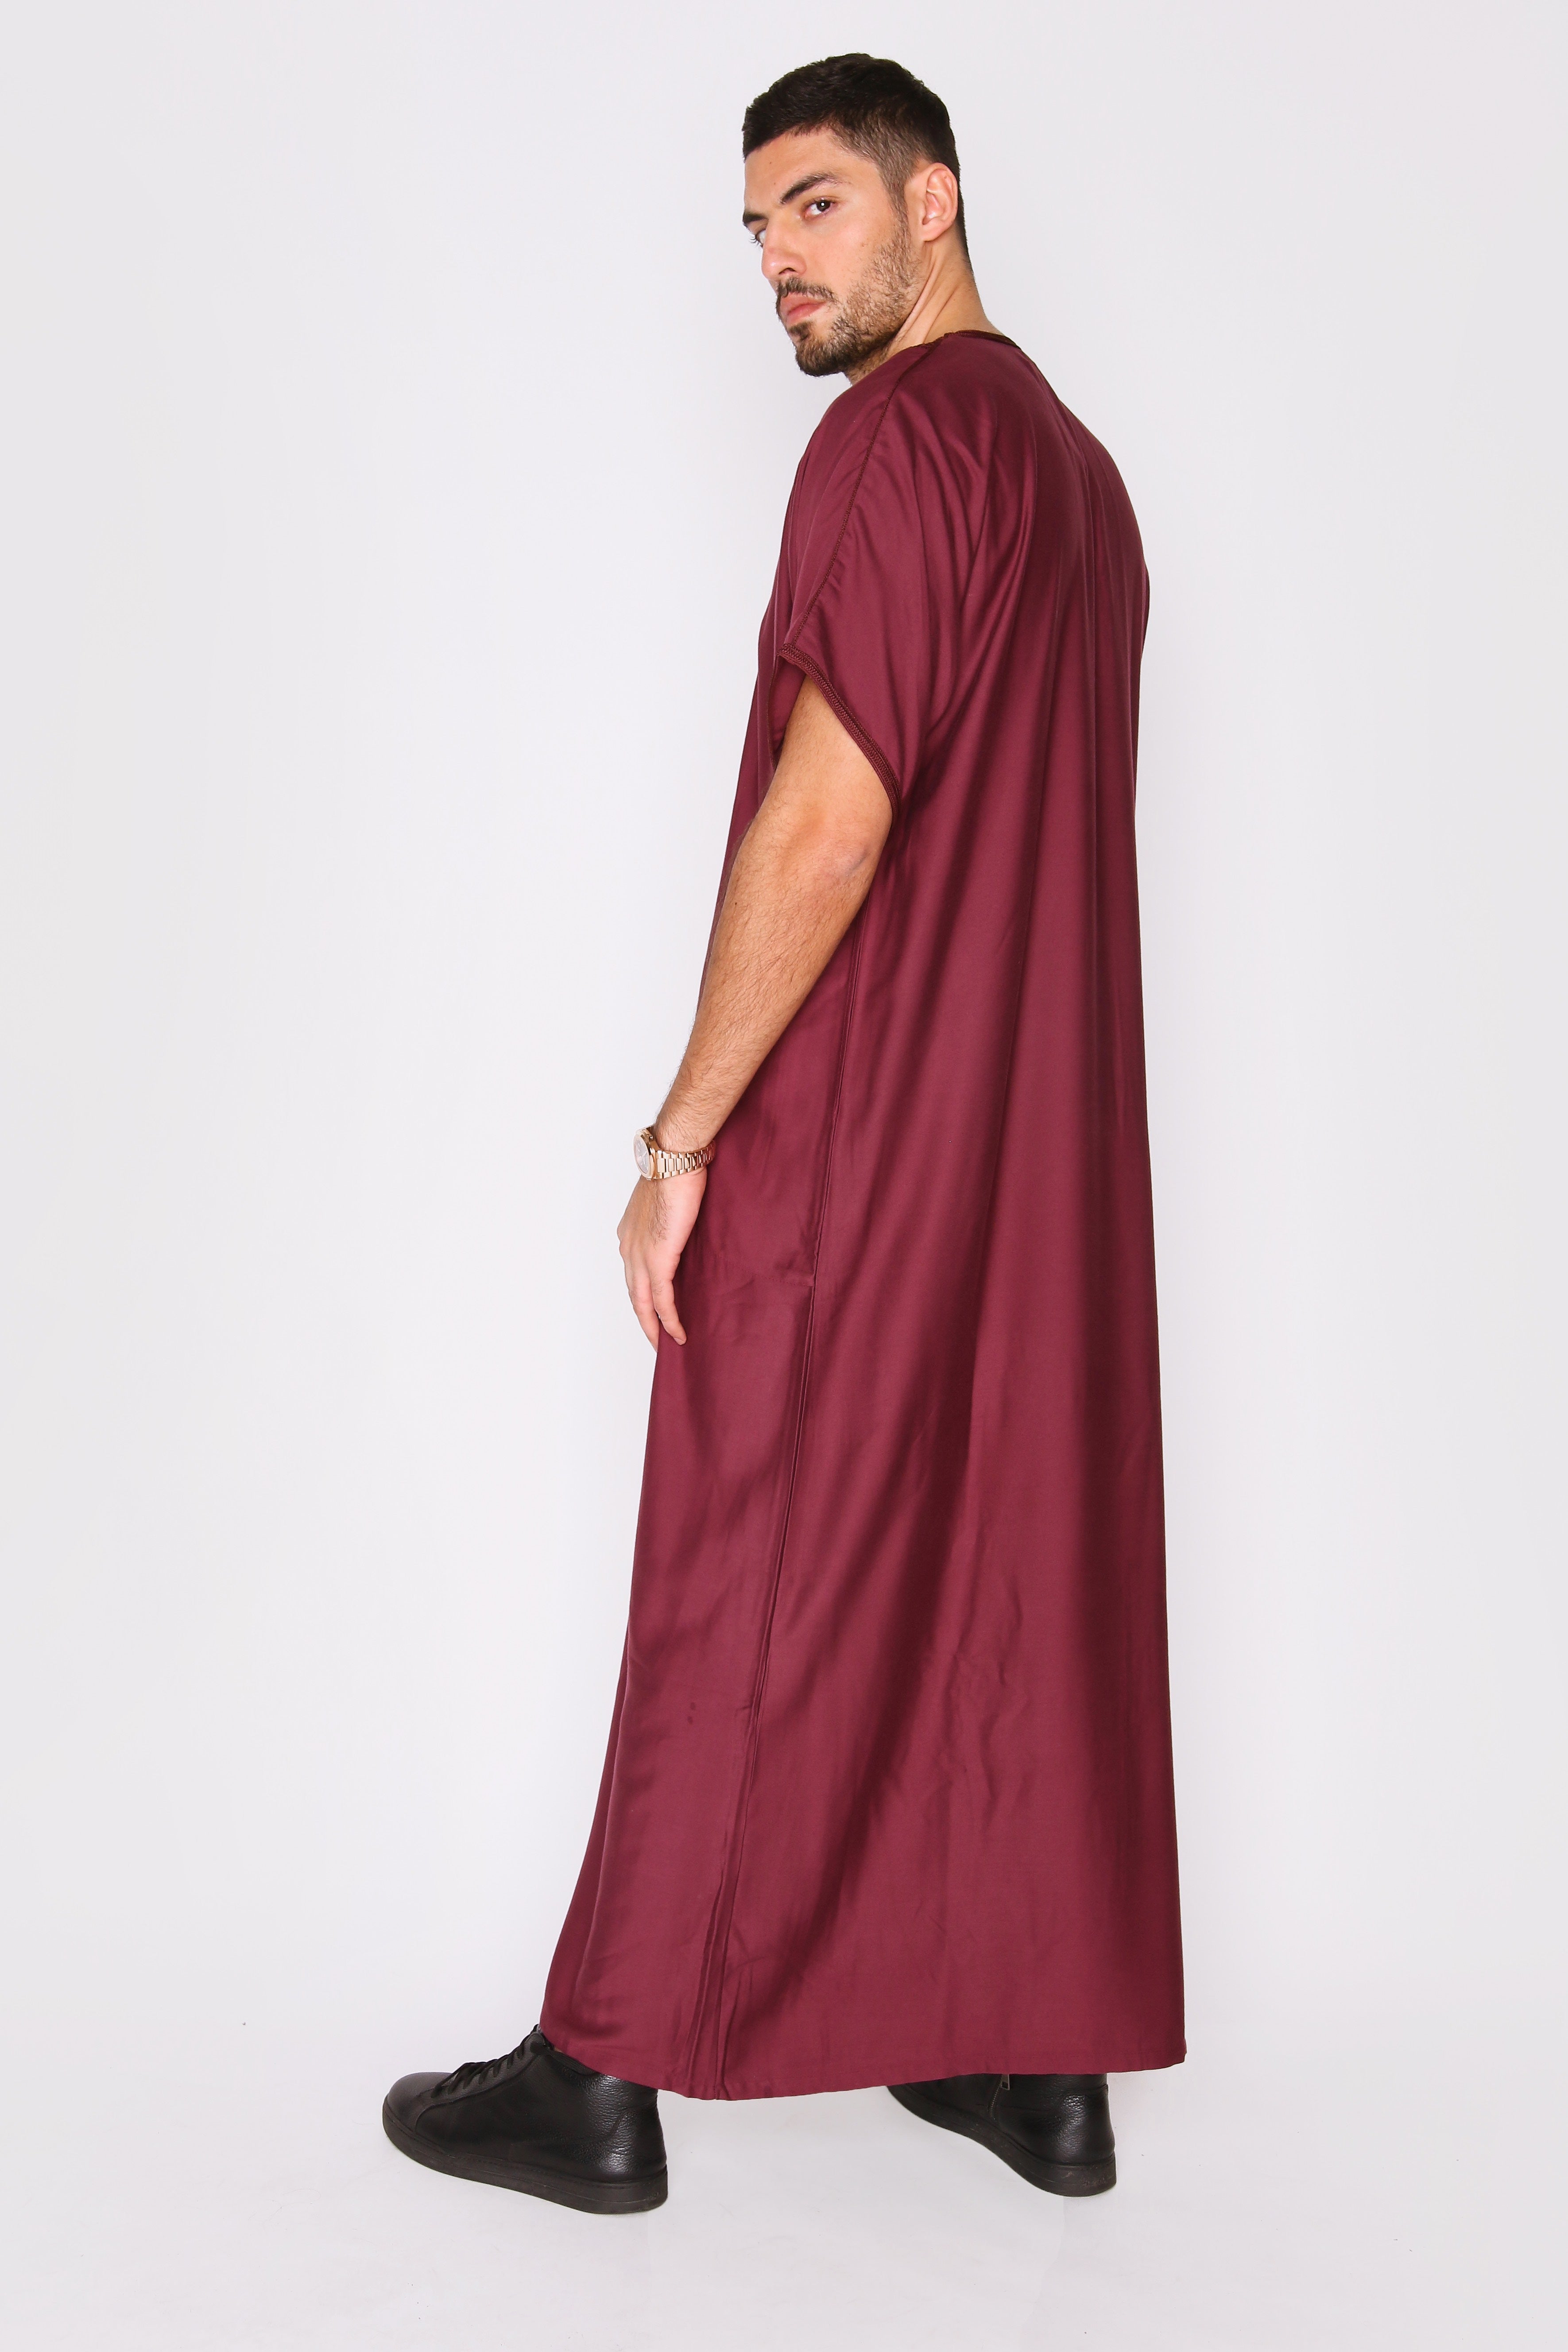 Gandoura Idriss Men's Embroidered Short Sleeve Full-Length Robe Thobe in Burgundy